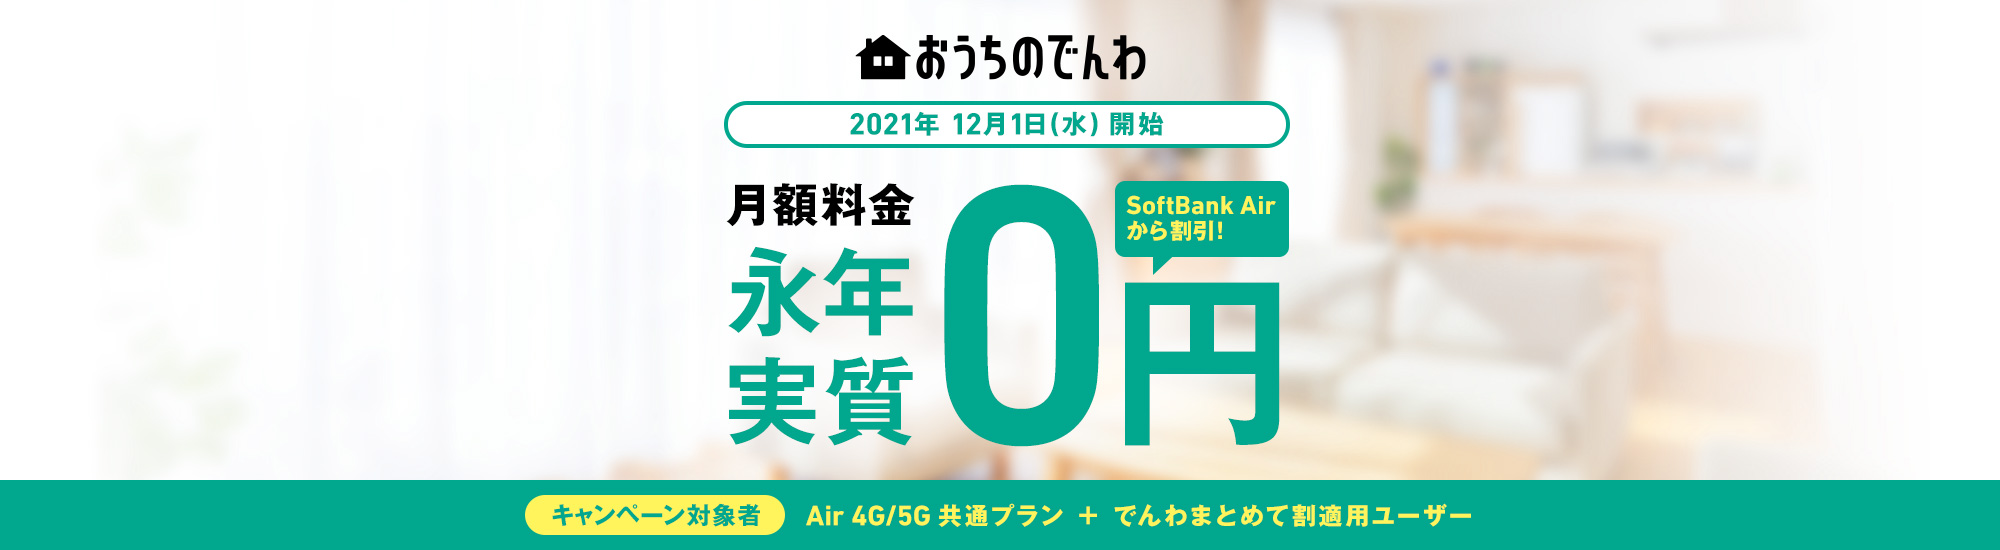 おうちのでんわ 2021年12月1日(水)開始 月額料金永年実質0円 SoftBank Airから割引! キャンペーン対象者 Air 4G/5G共通プラン + でんわまとめて割適用ユーザー